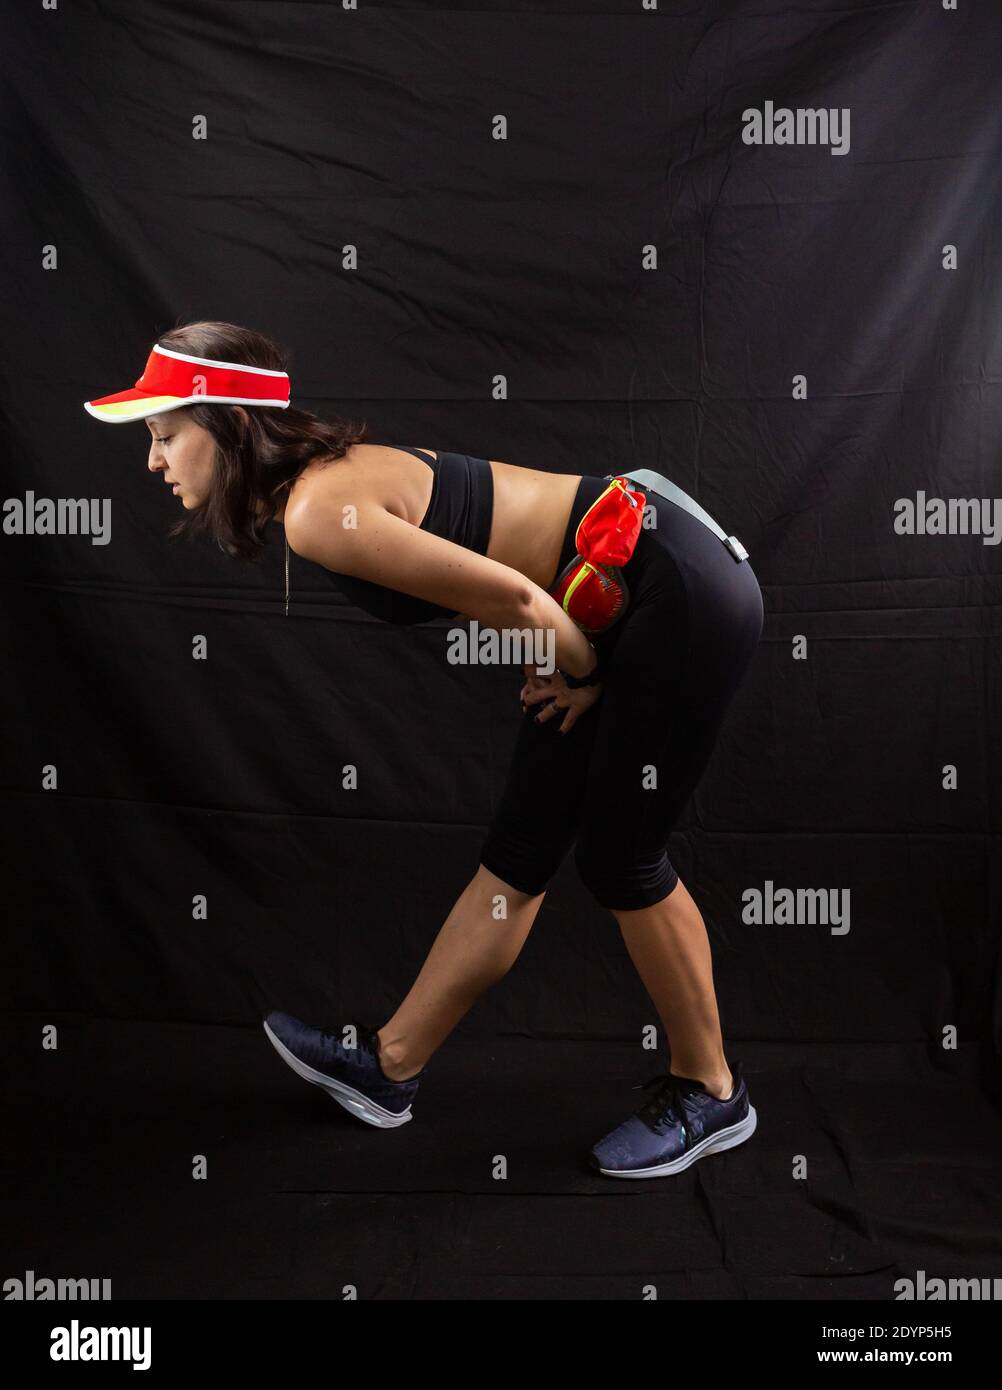 Schönes Mädchen in einer Jogging roten Uniform Aufwärmen vor dem Training im Studio auf einem schwarzen Hintergrund. Stockfoto